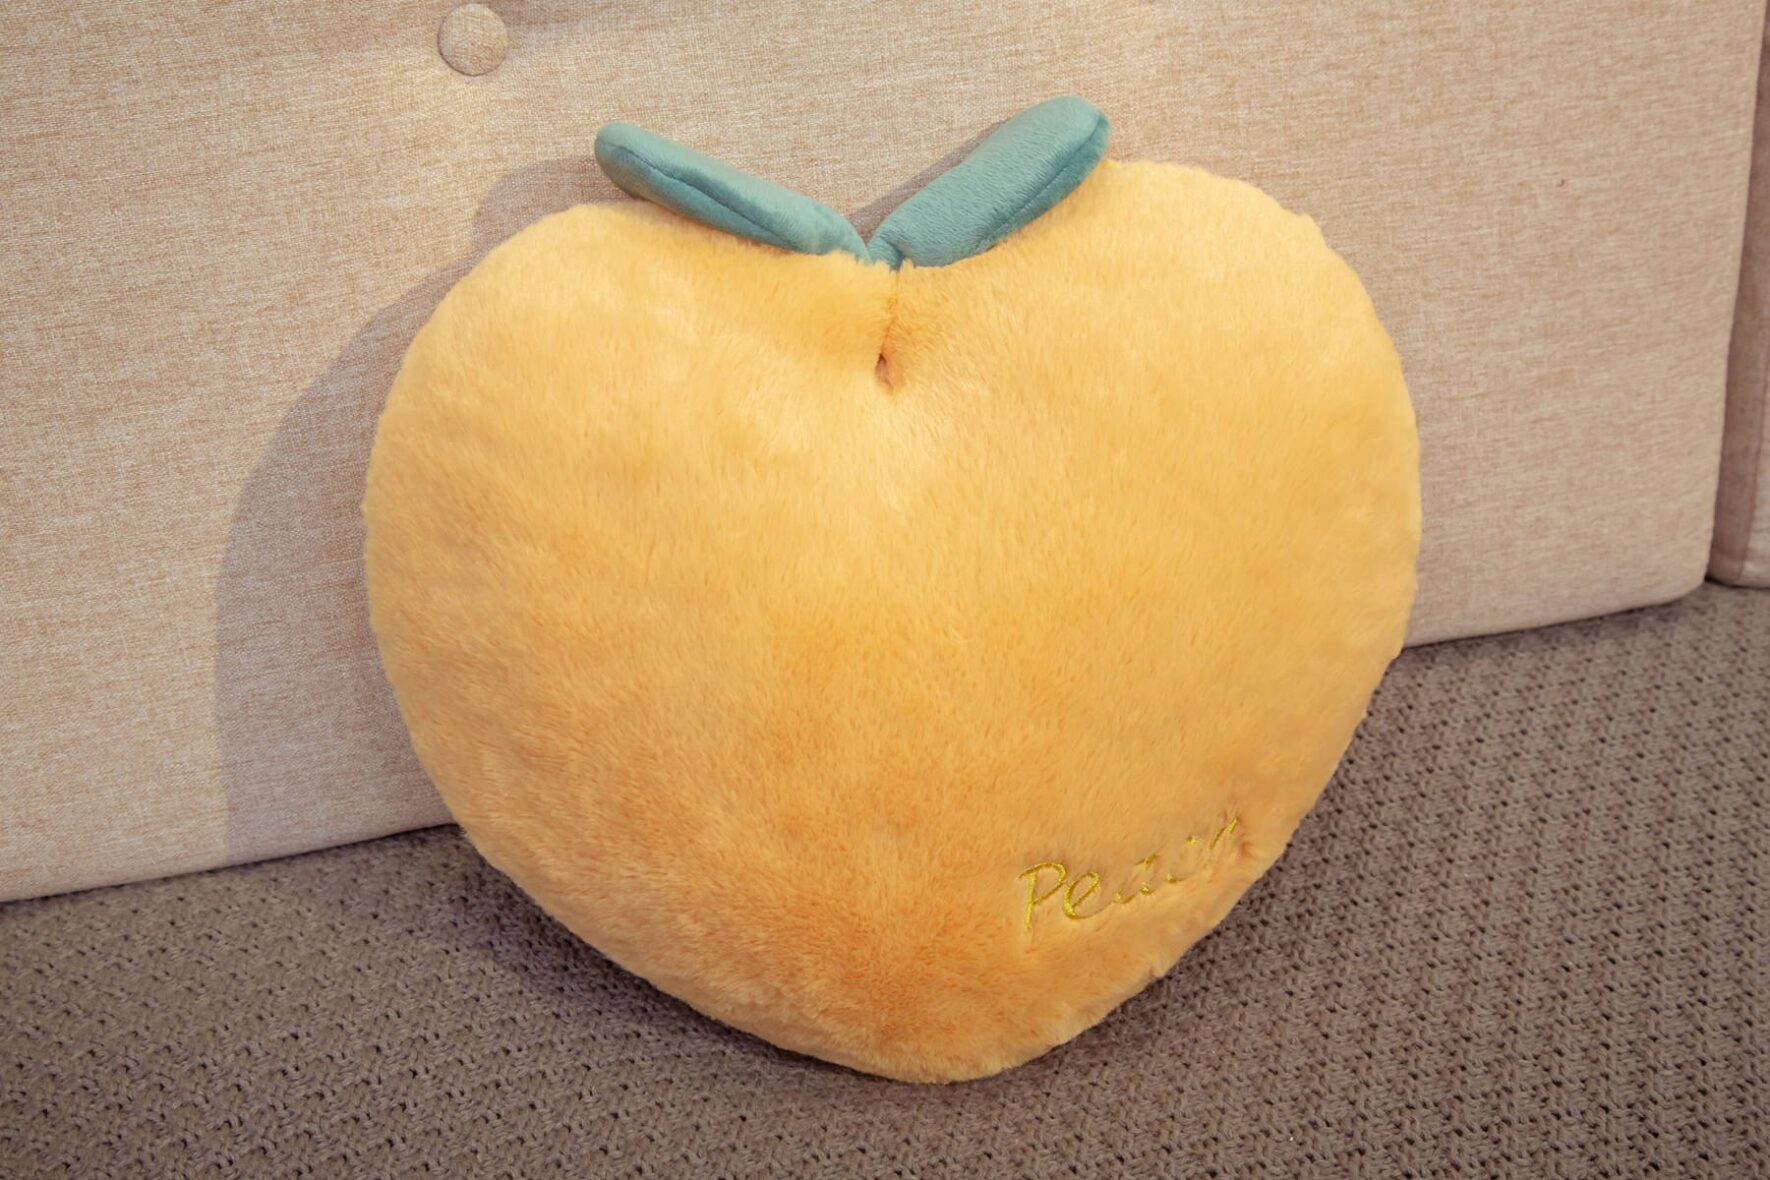 Peach Shaped Soft Stuffed Plush Yellow Pillow